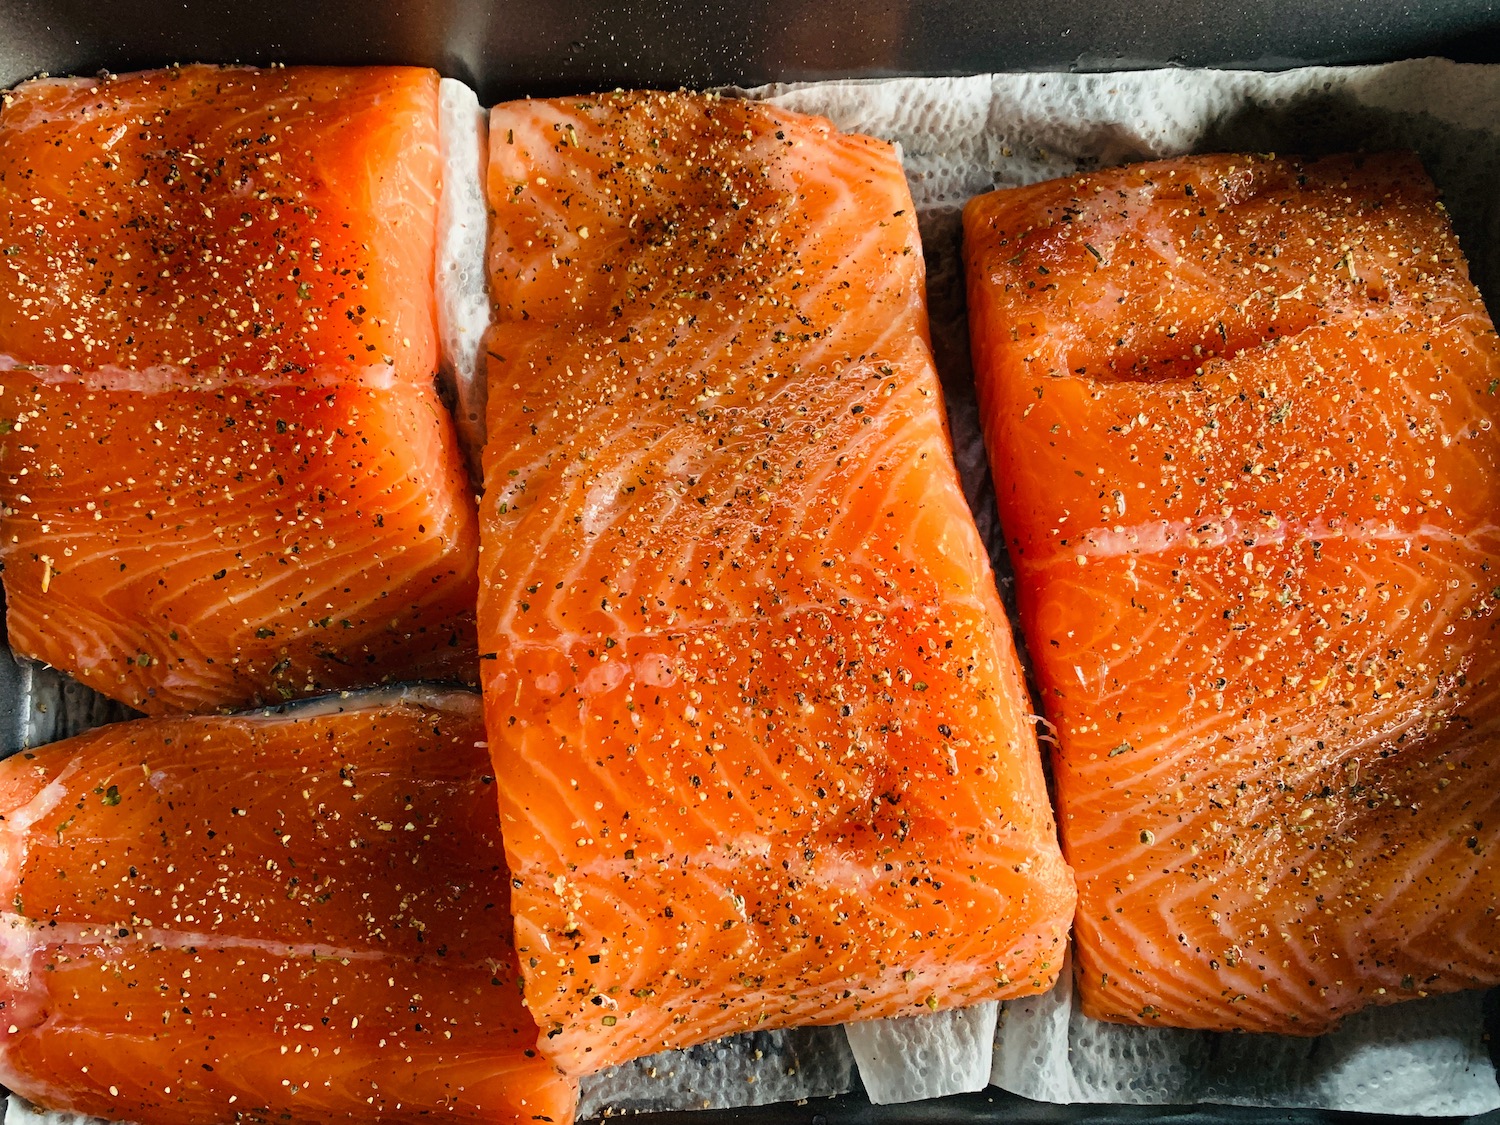 Norwegian salmon